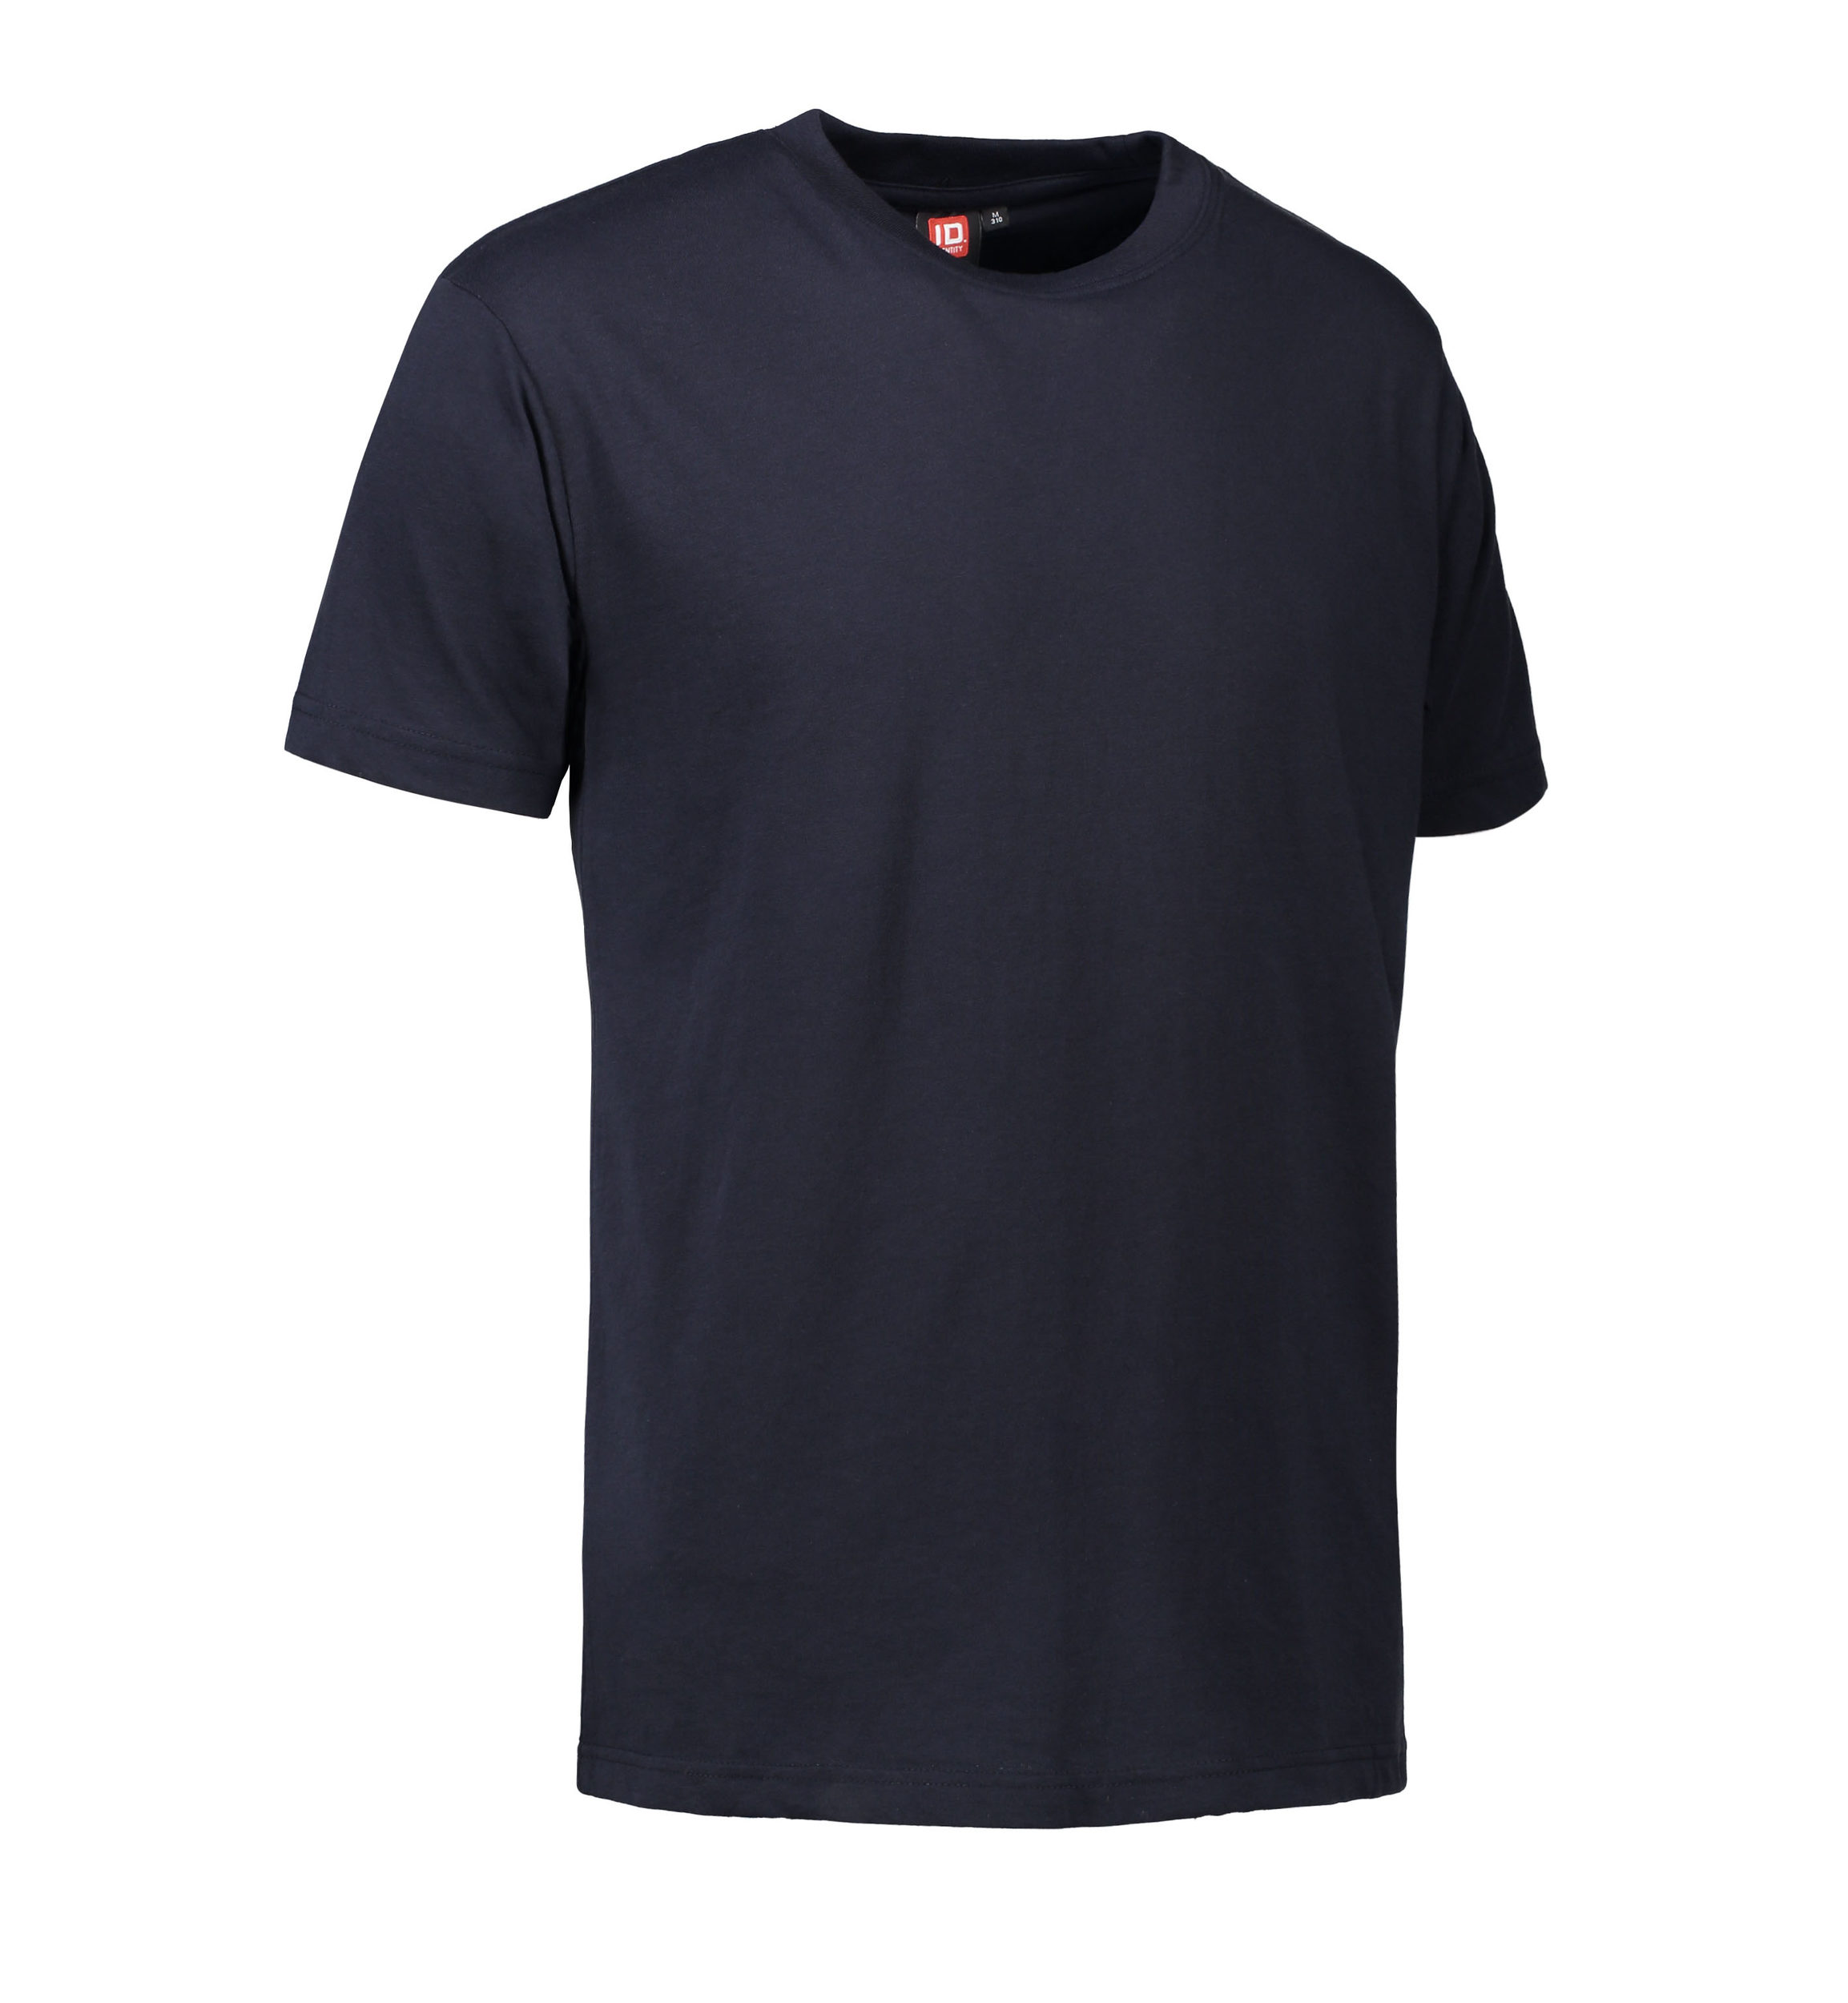 Se Slidstærk t-shirt i navy til mænd - 5XL hos Sygeplejebutikken.dk